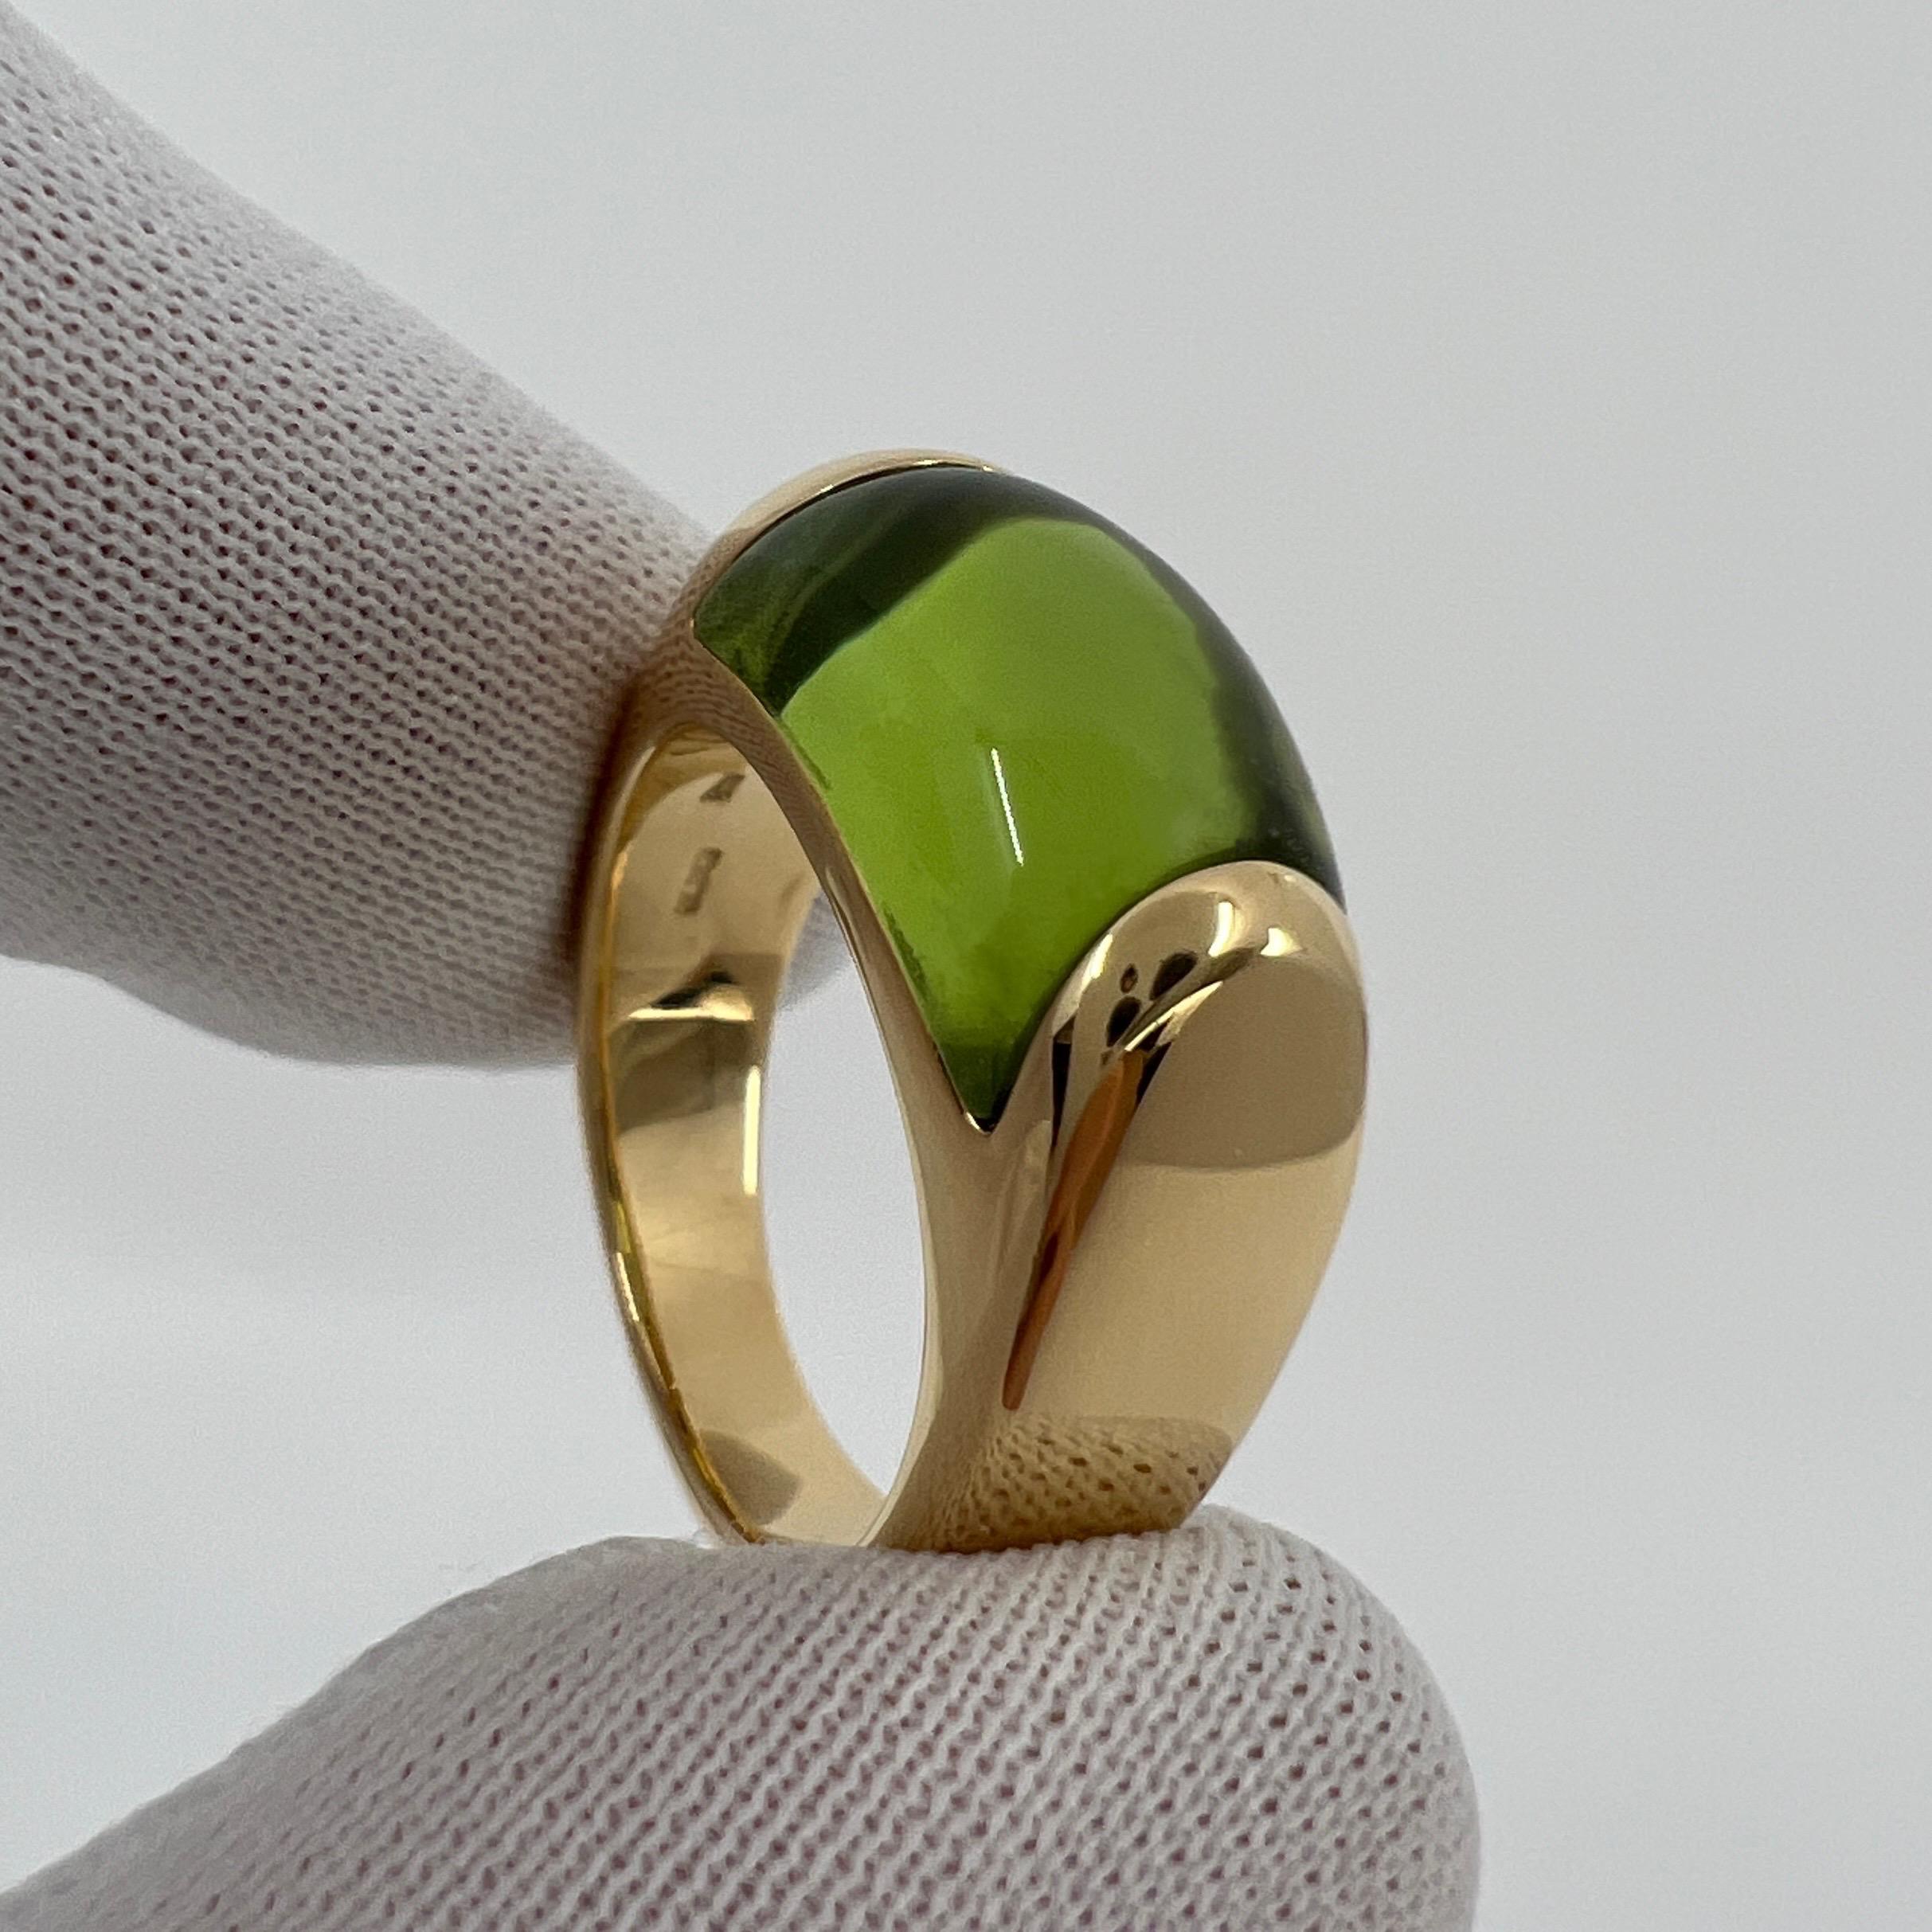 Rare Bvlgari Bulgari Tronchetto 18k Yellow Gold Green Tourmaline Ring with Box 6